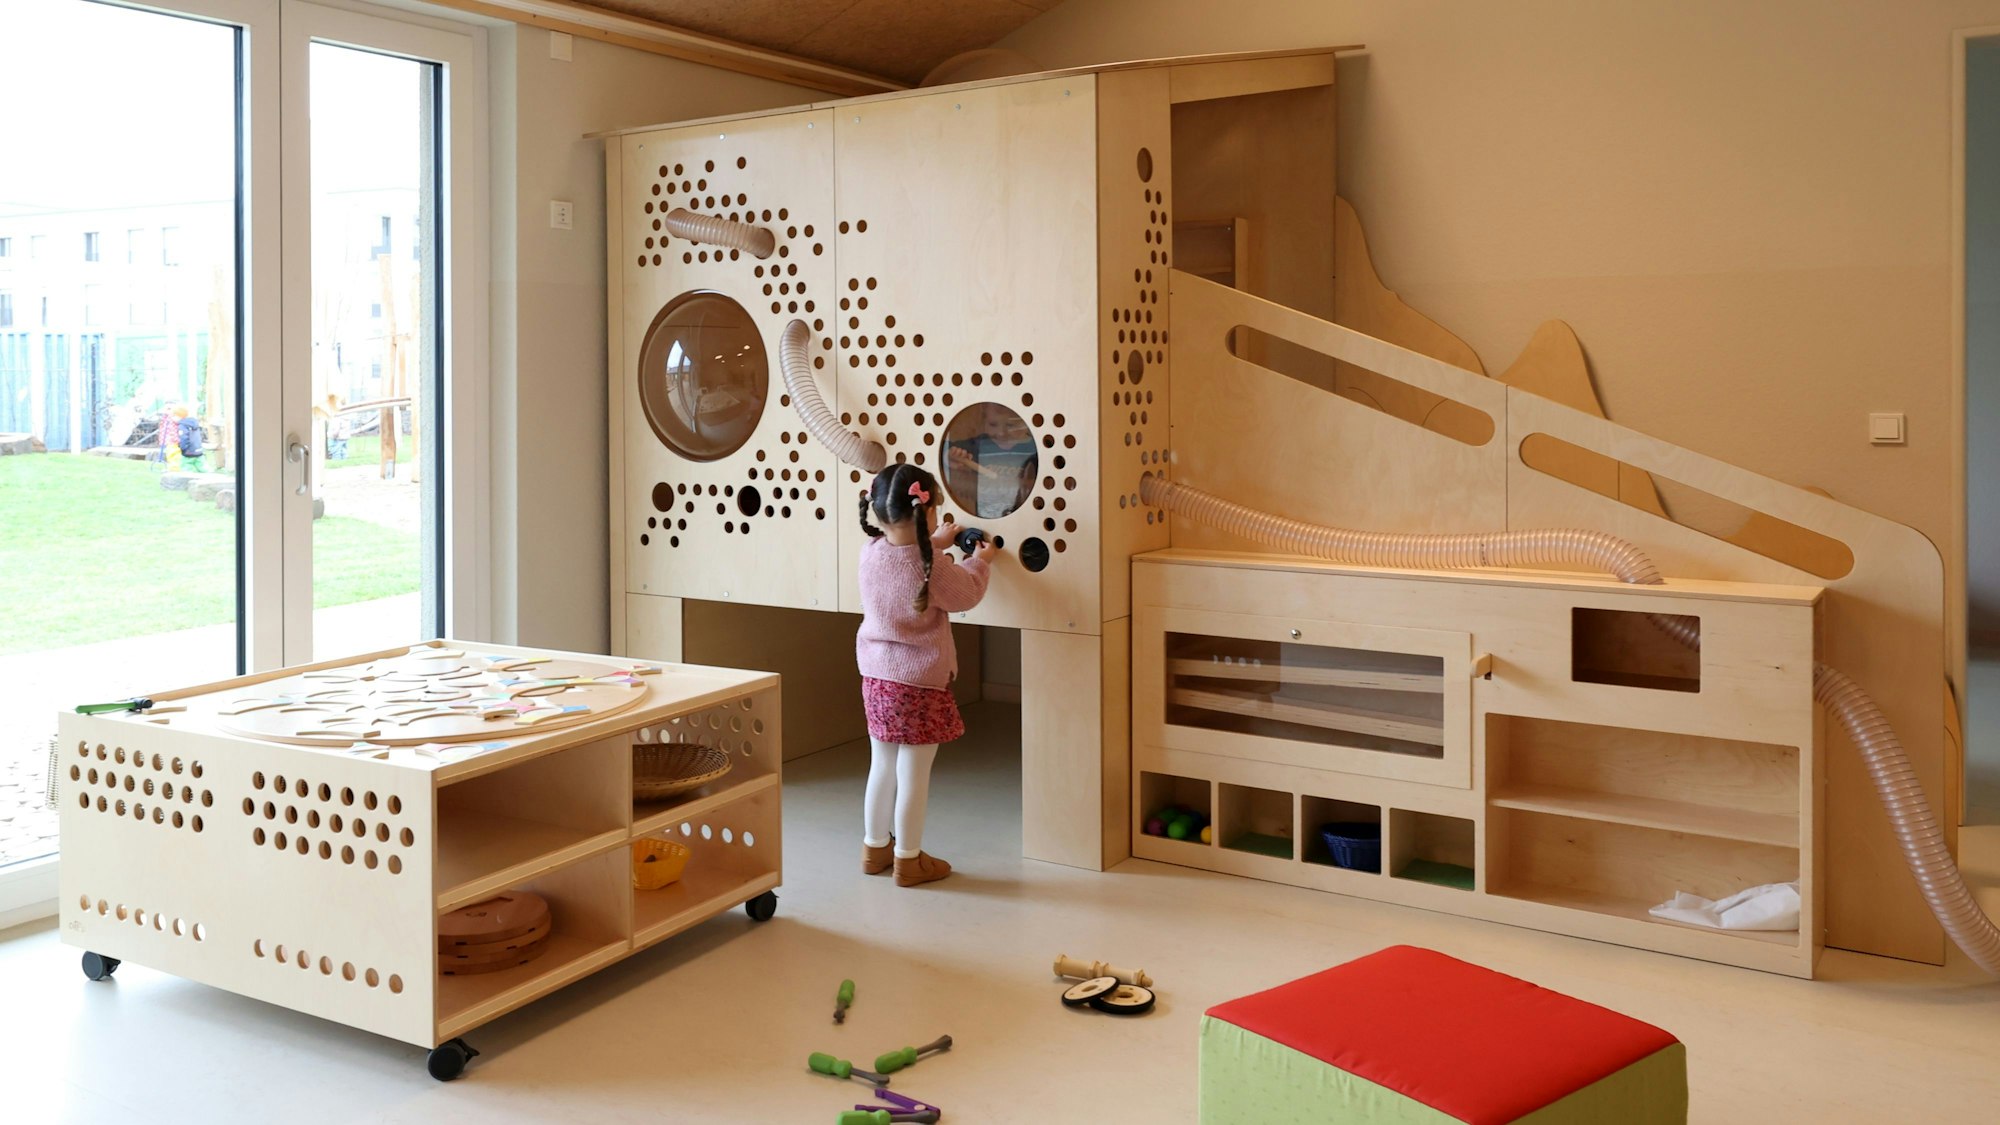 Blick in einen Gruppenraum einer Kita. Ein Kind spielt an einer Holzwand.